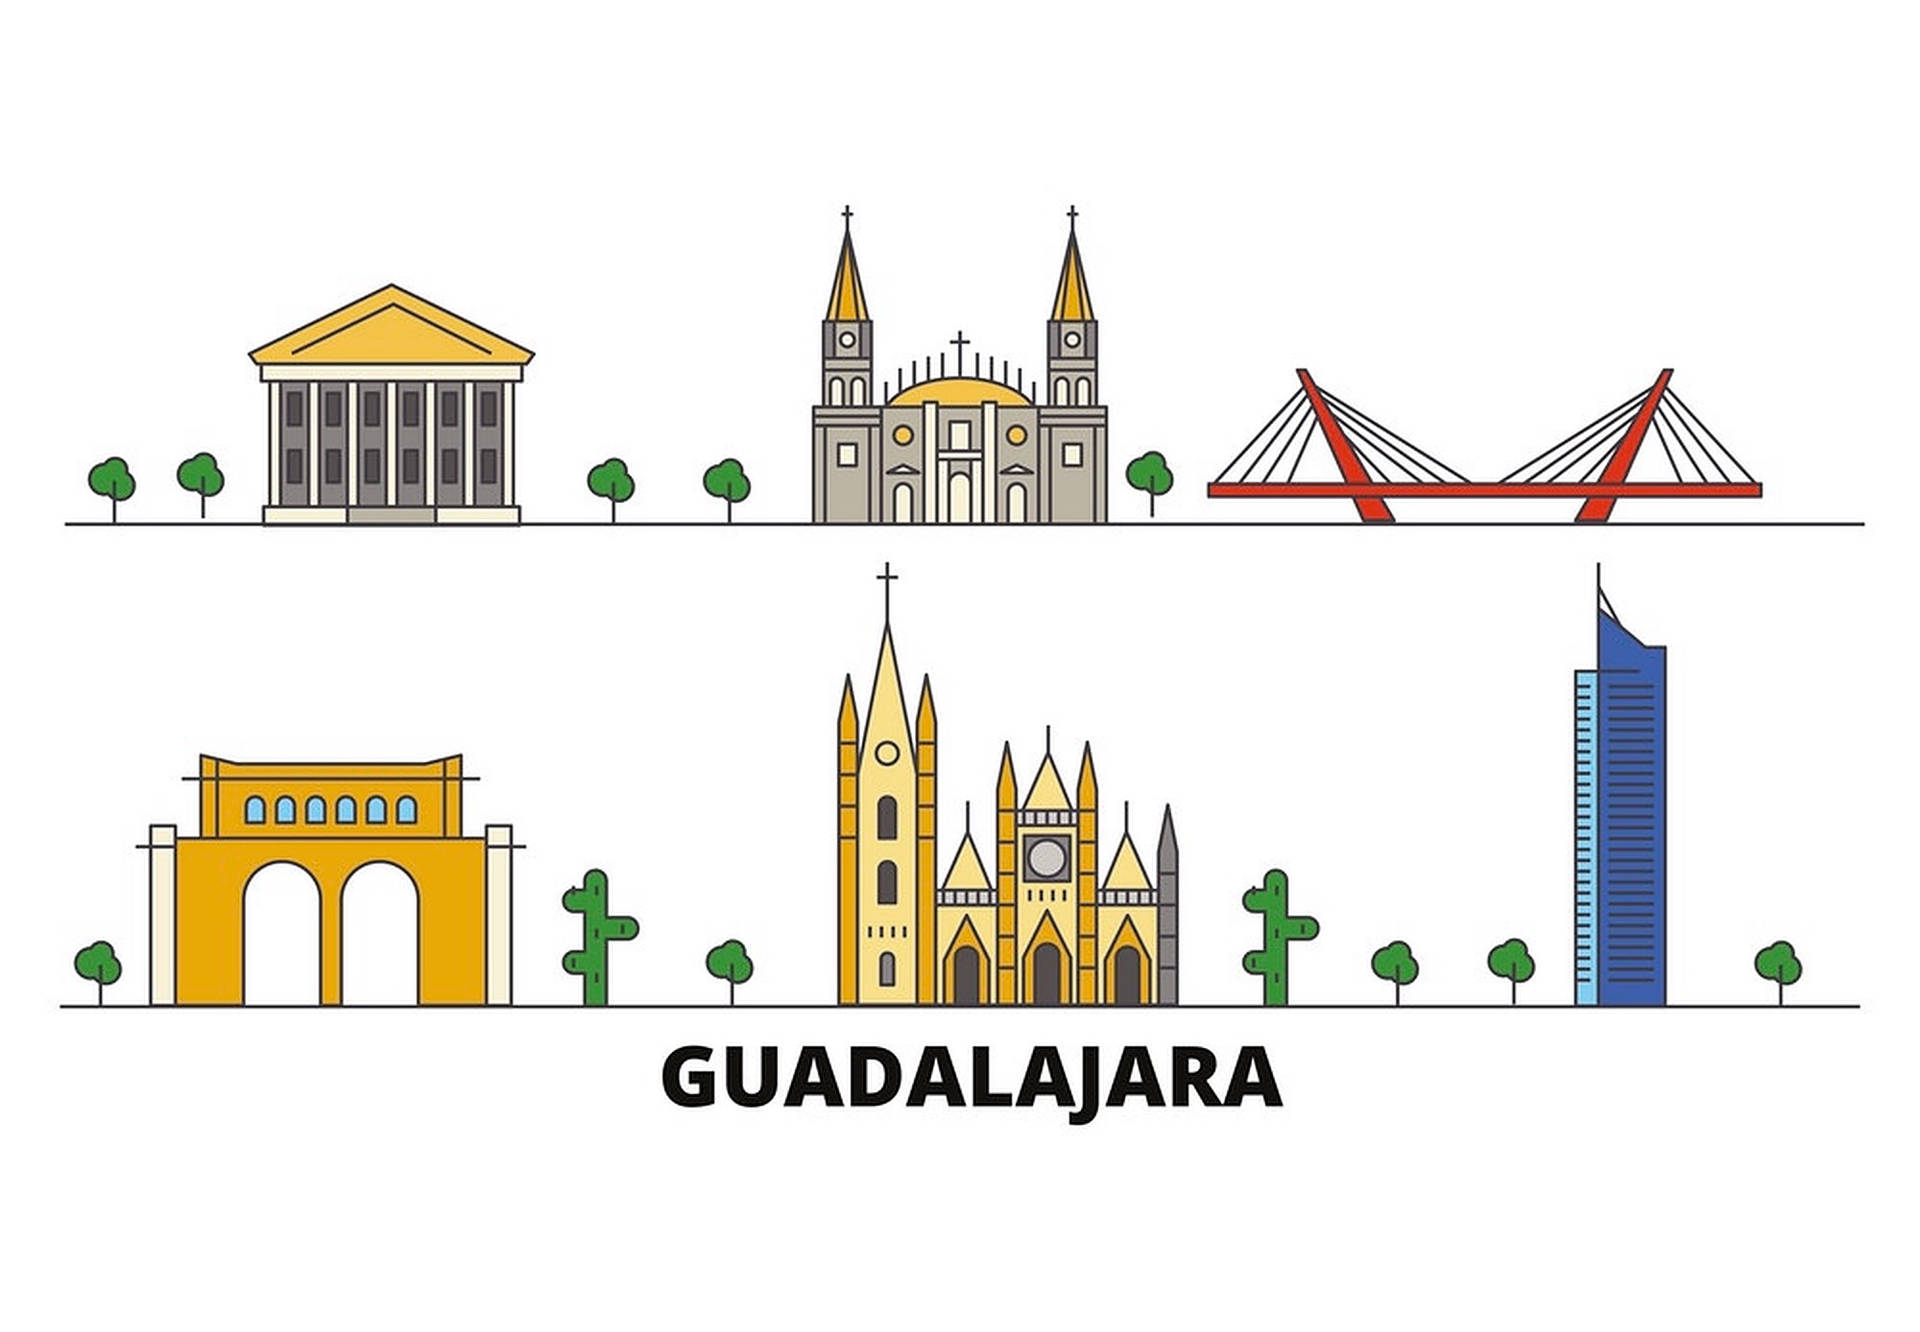 Guadalajara Graphic Art Background